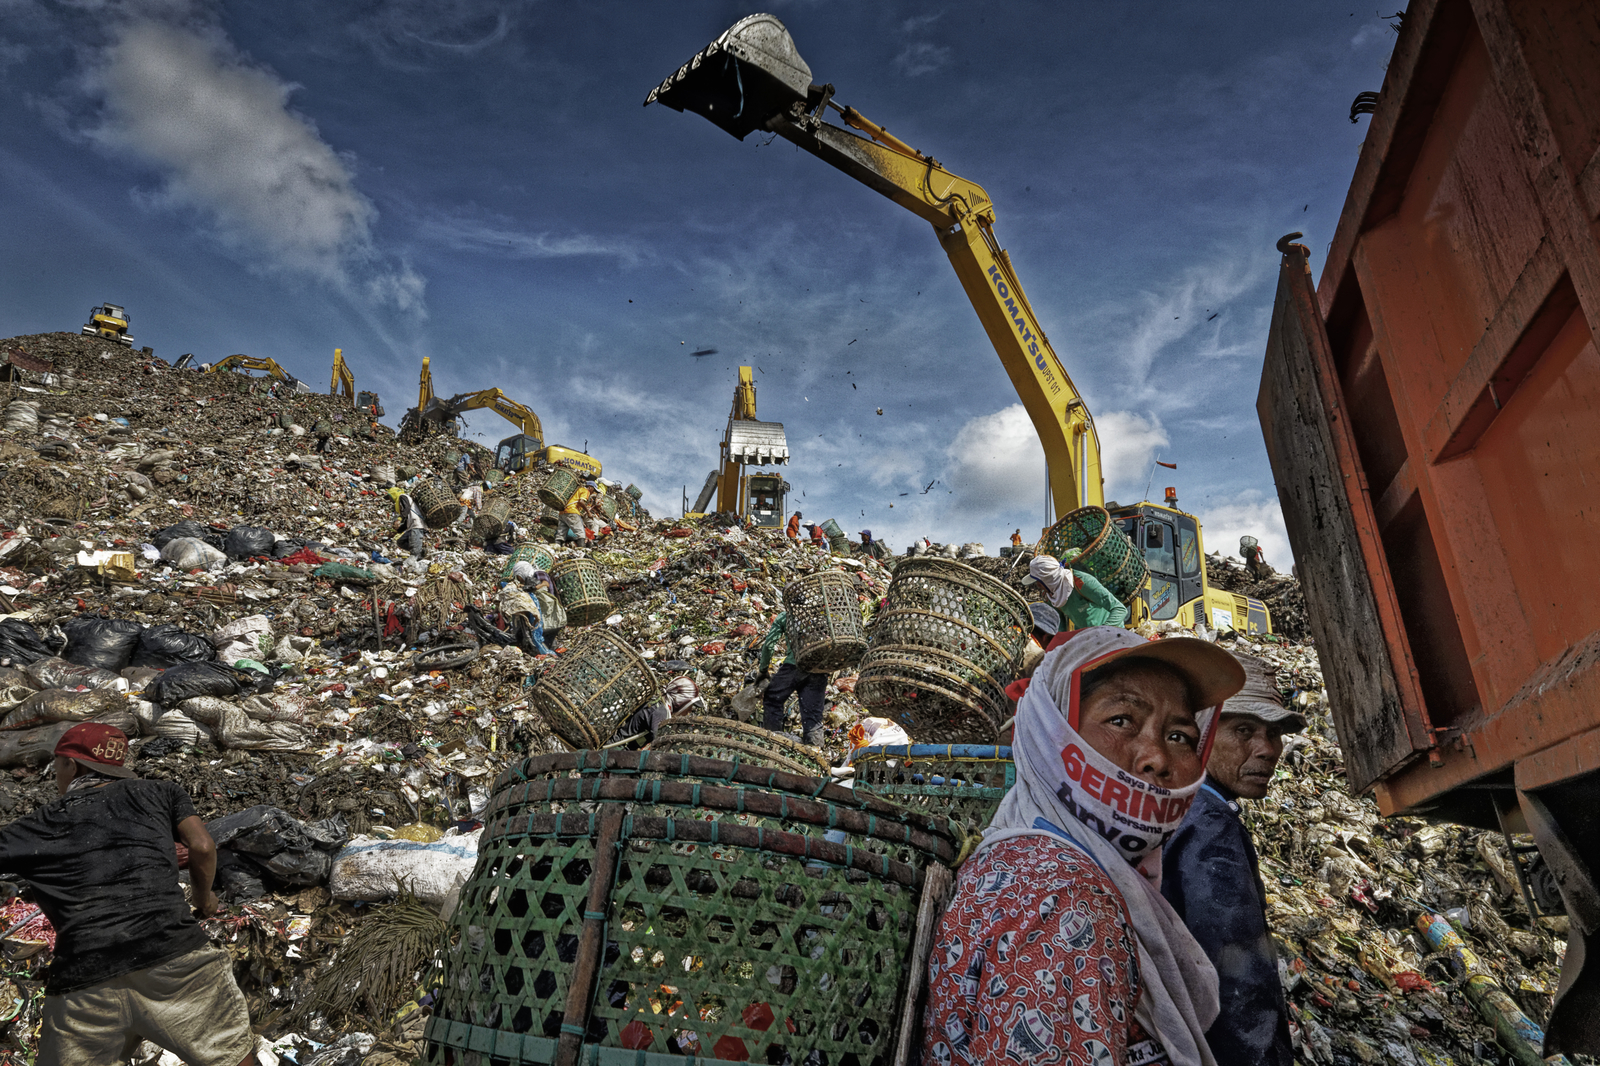 Plastic Workers at Dumpsite